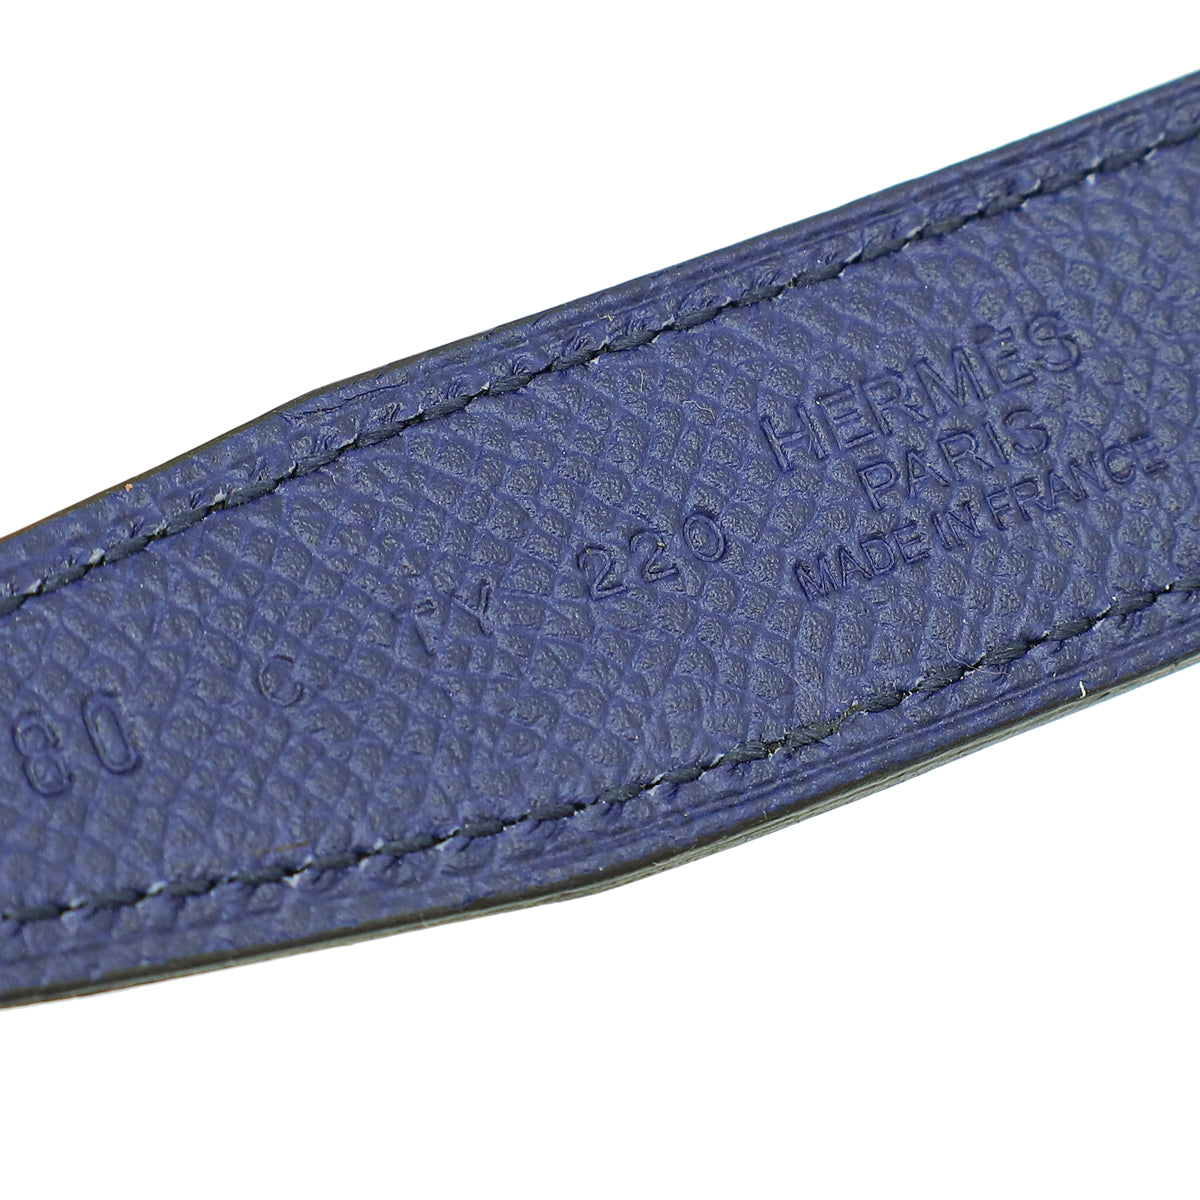 Hermes Bicolor Constance Mini Buckle Reversible 24mm Belt